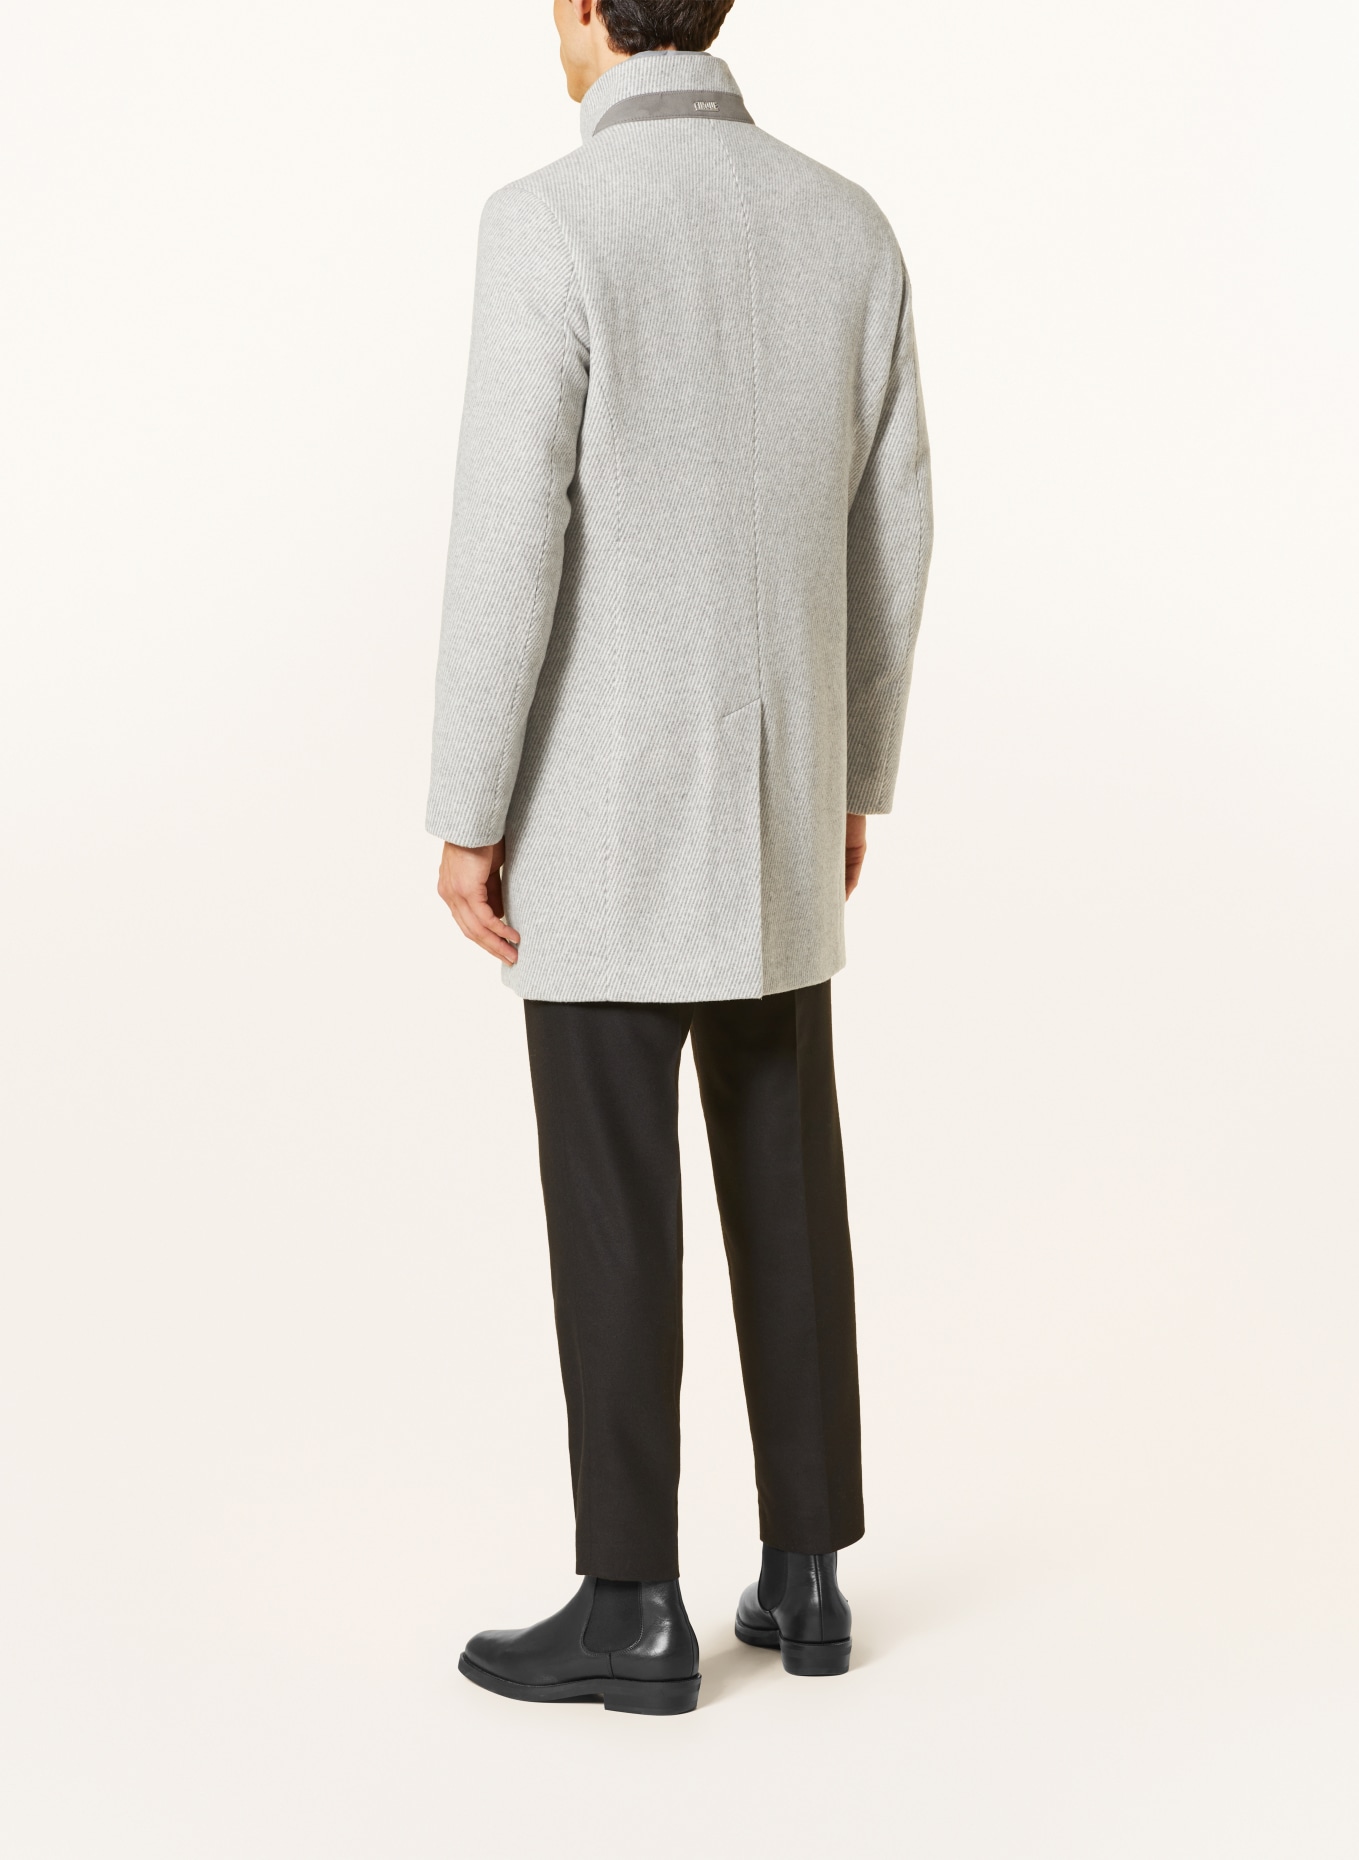 CINQUE Wool coat CICHOICE, Color: LIGHT GRAY/ GRAY (Image 4)